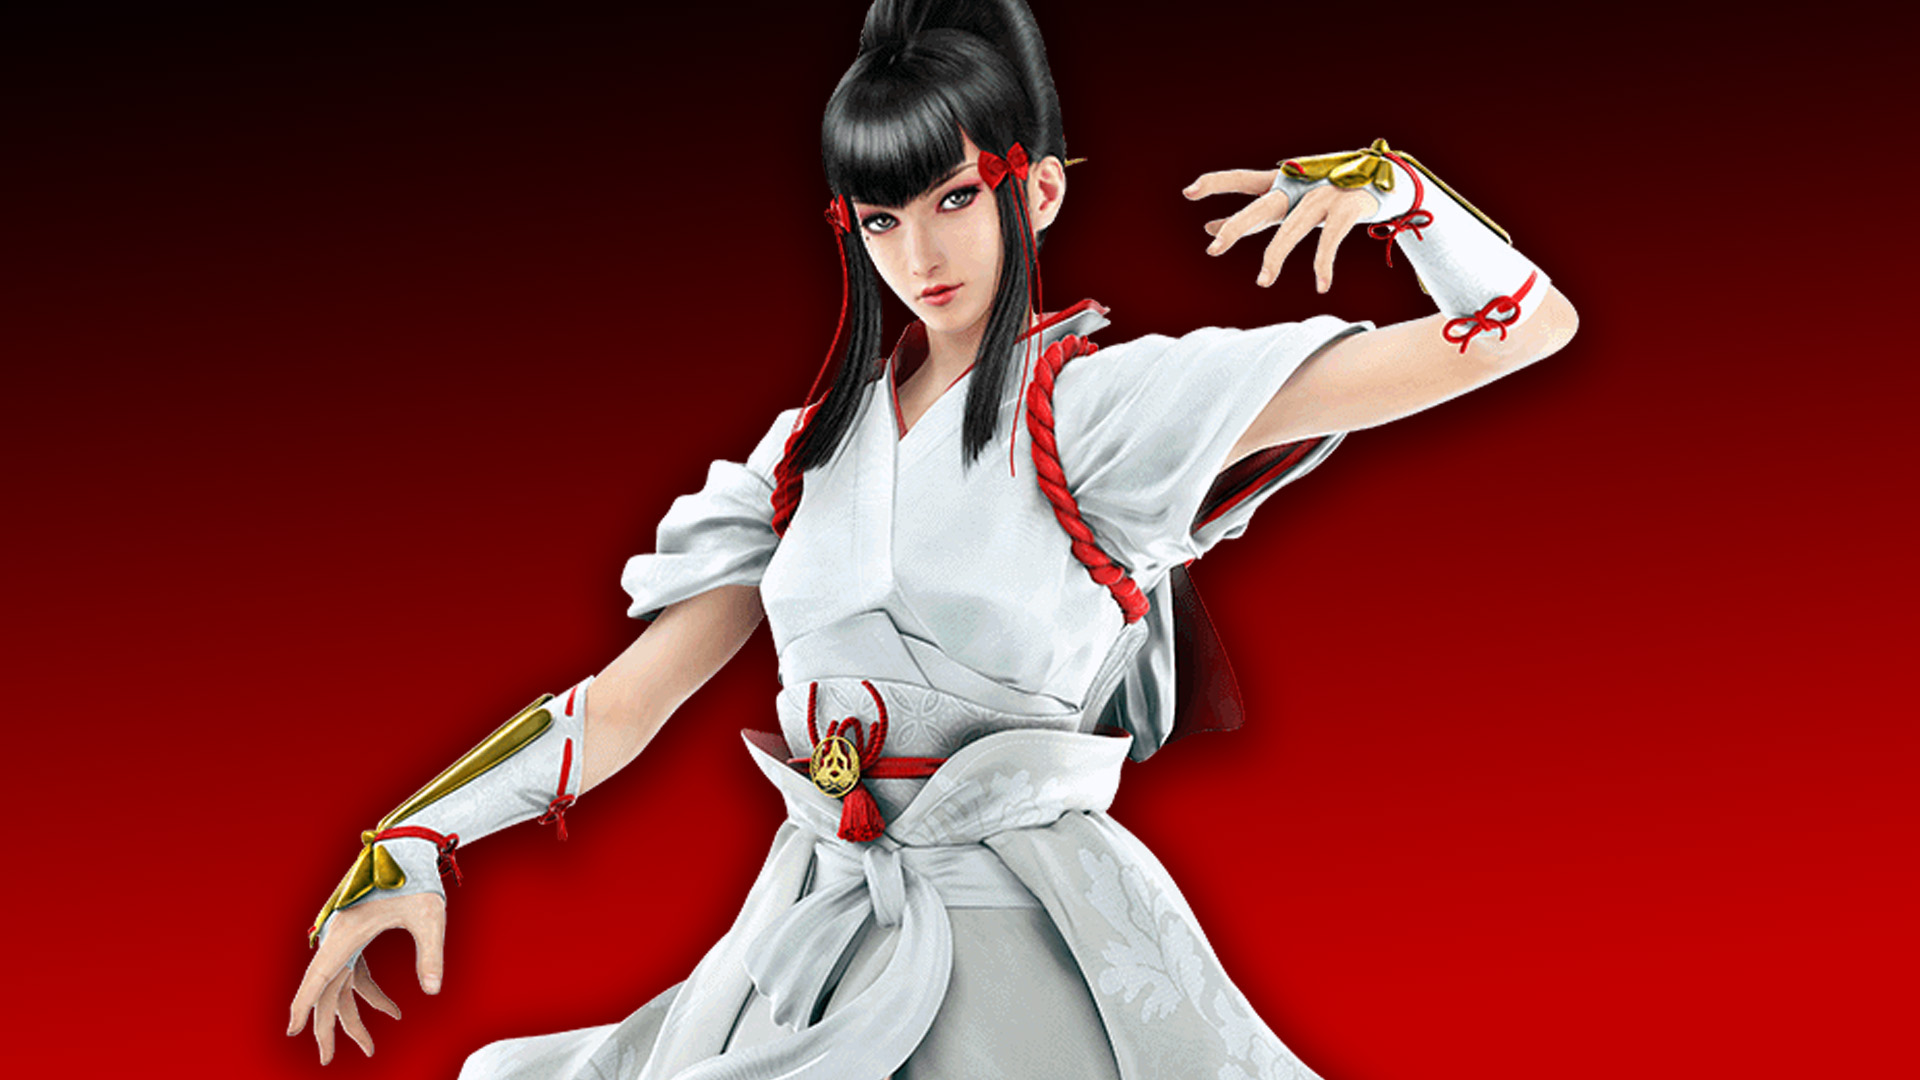 Tekken 7 tự hào công bố doanh thu, bán được hơn 10 triệu bản trên toàn thế giới - Ảnh 2.